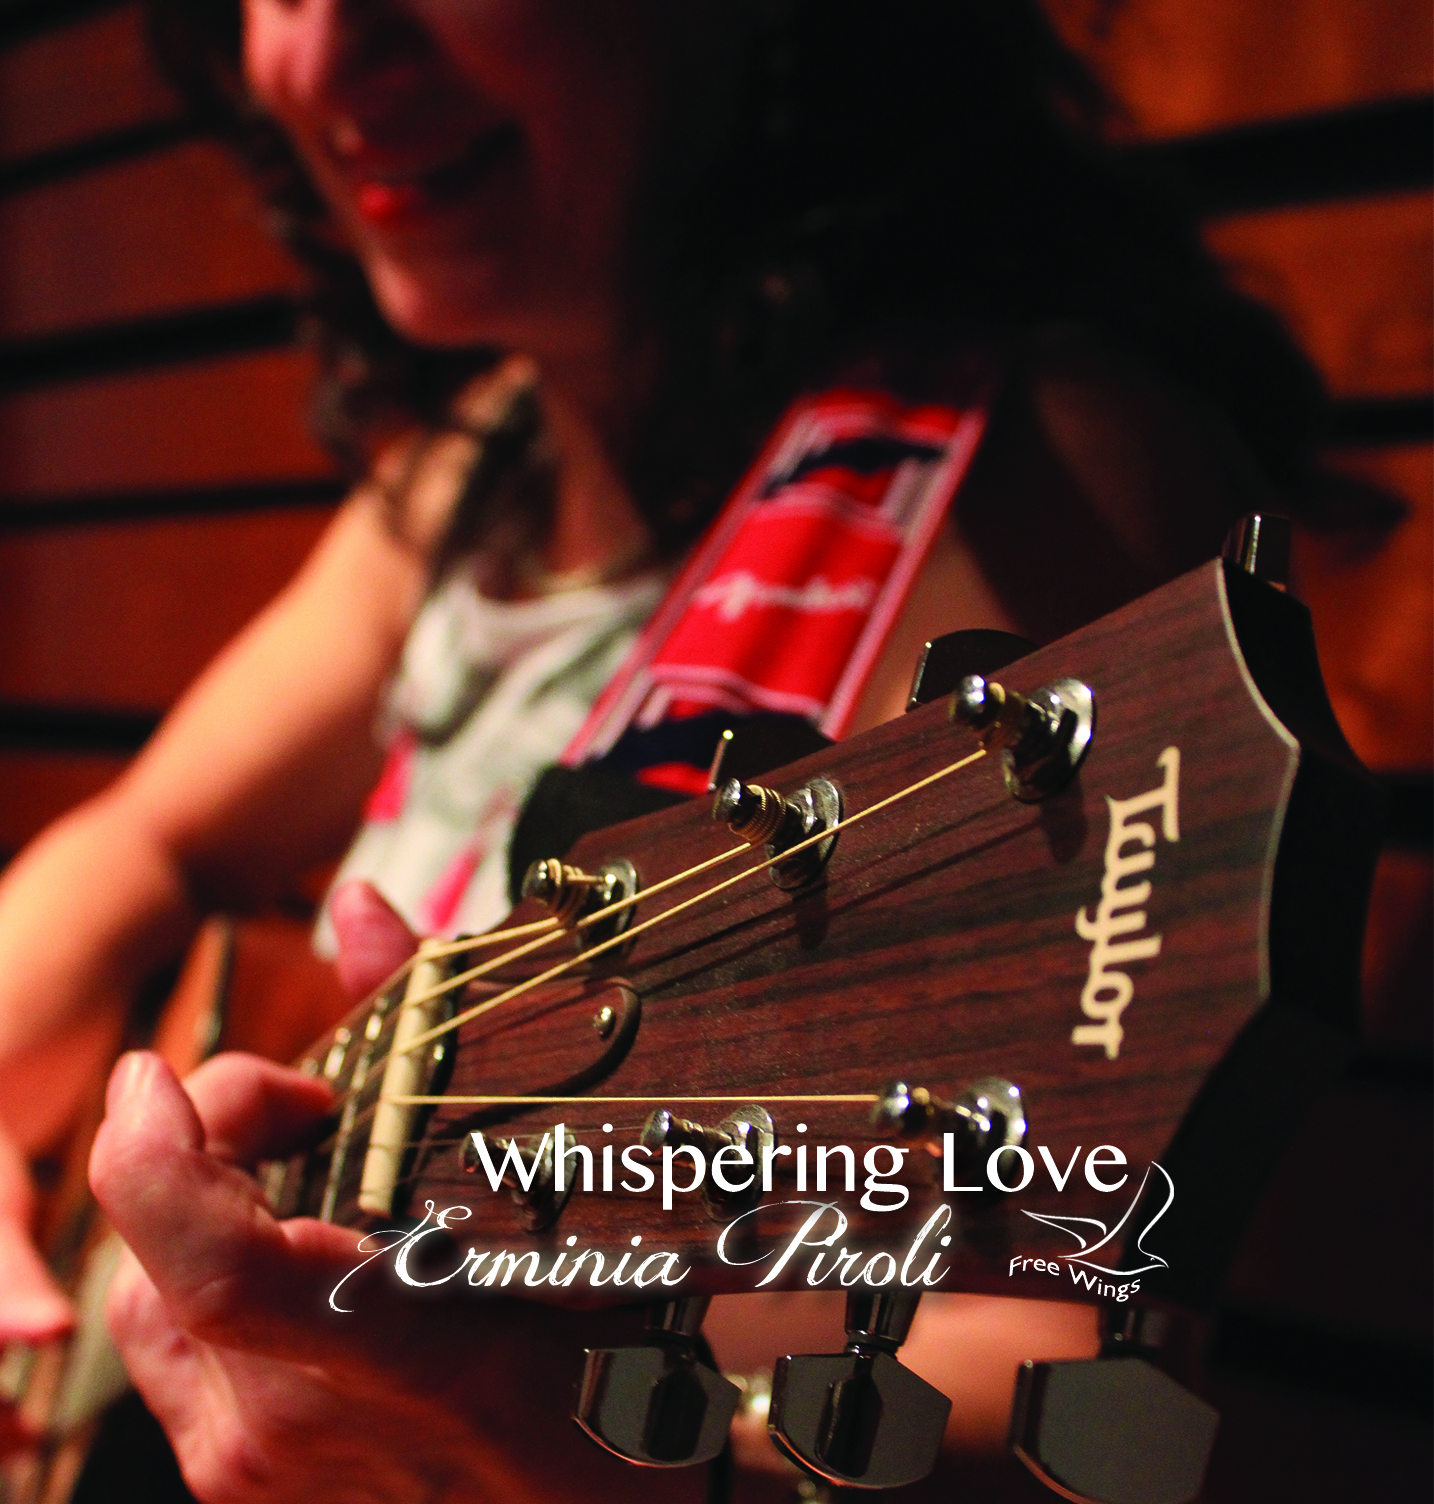 Produzione discografica: “Whispering Love” – Erminia Piroli